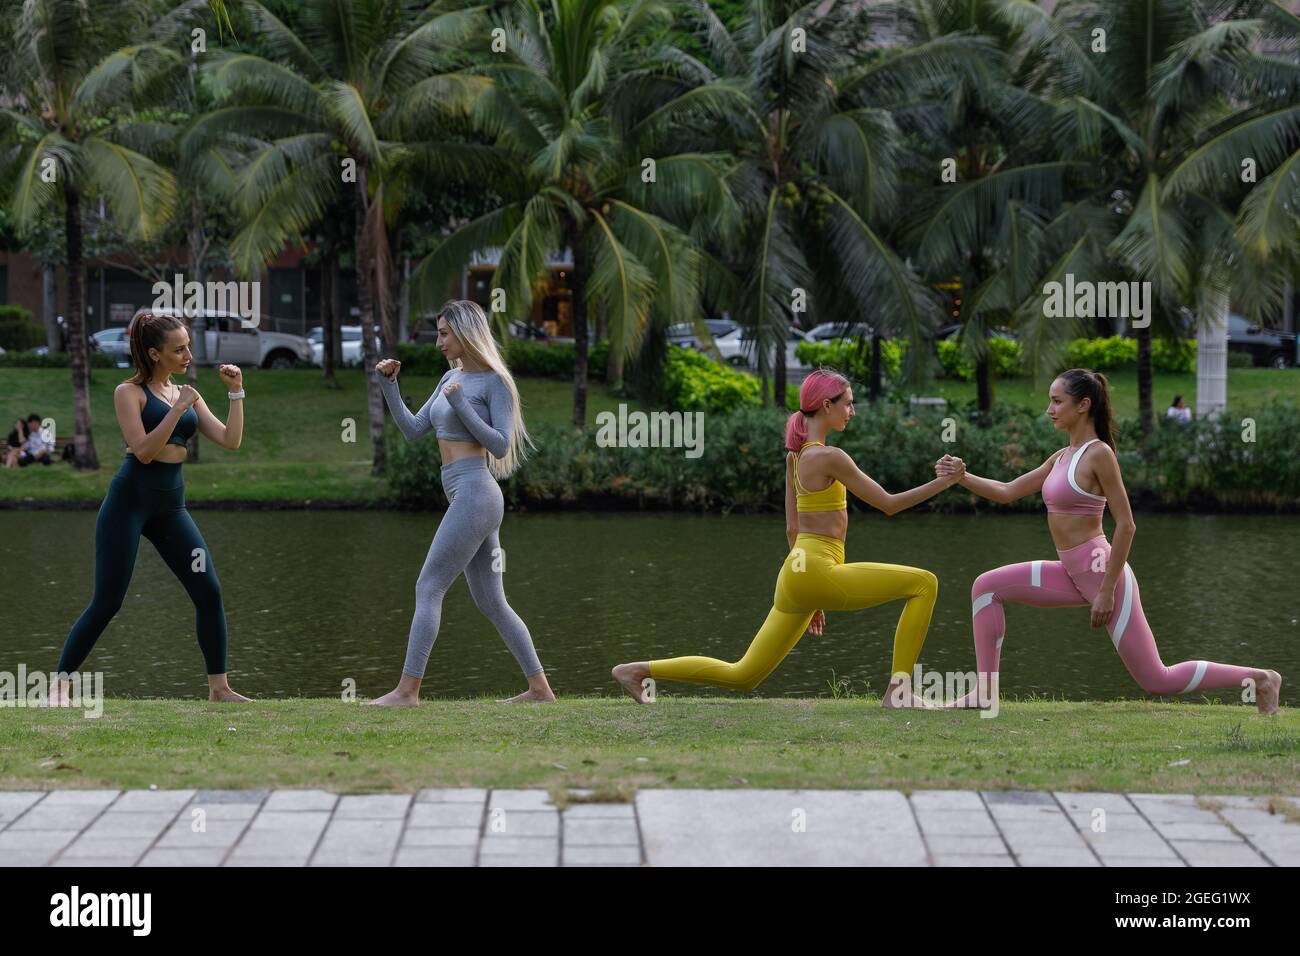 Quatre jolies jeunes femmes faisant des exercices de fitness dans le parc au lieu d'aller à la salle de gym. Concept d'exercice pour une bonne forme. Concept de mode de vie sain. Banque D'Images